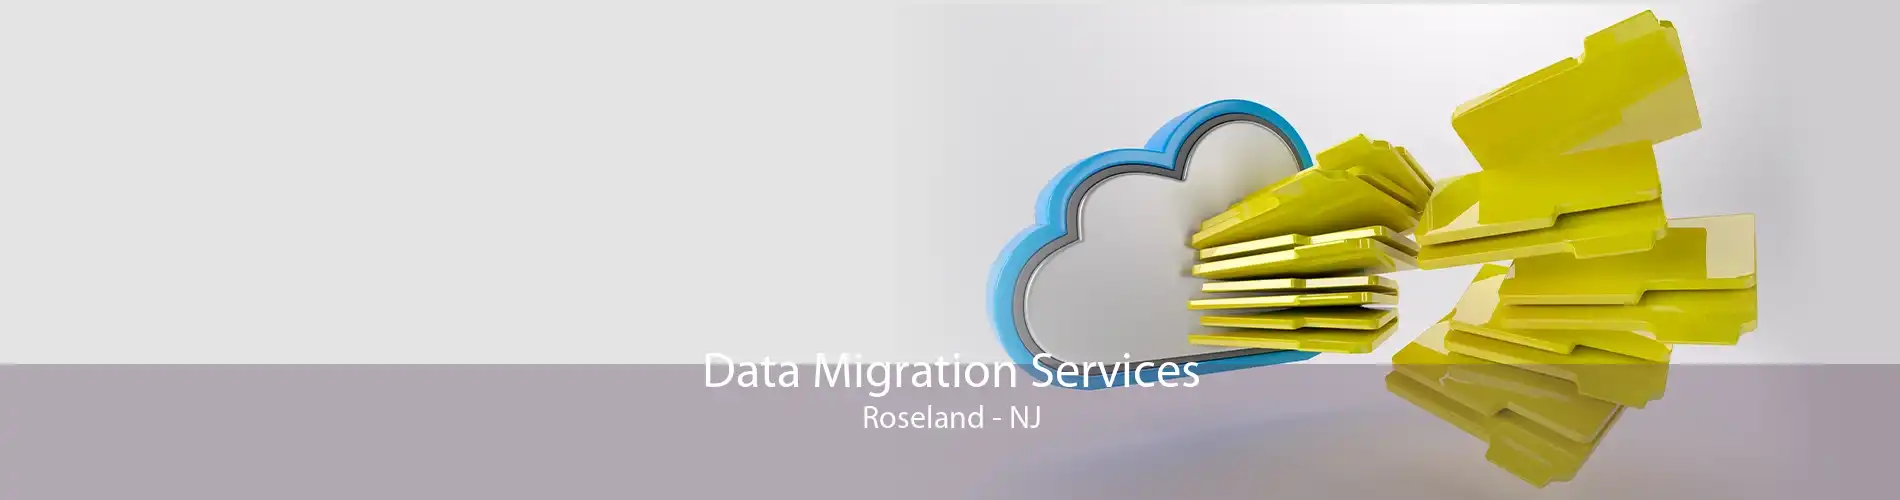 Data Migration Services Roseland - NJ